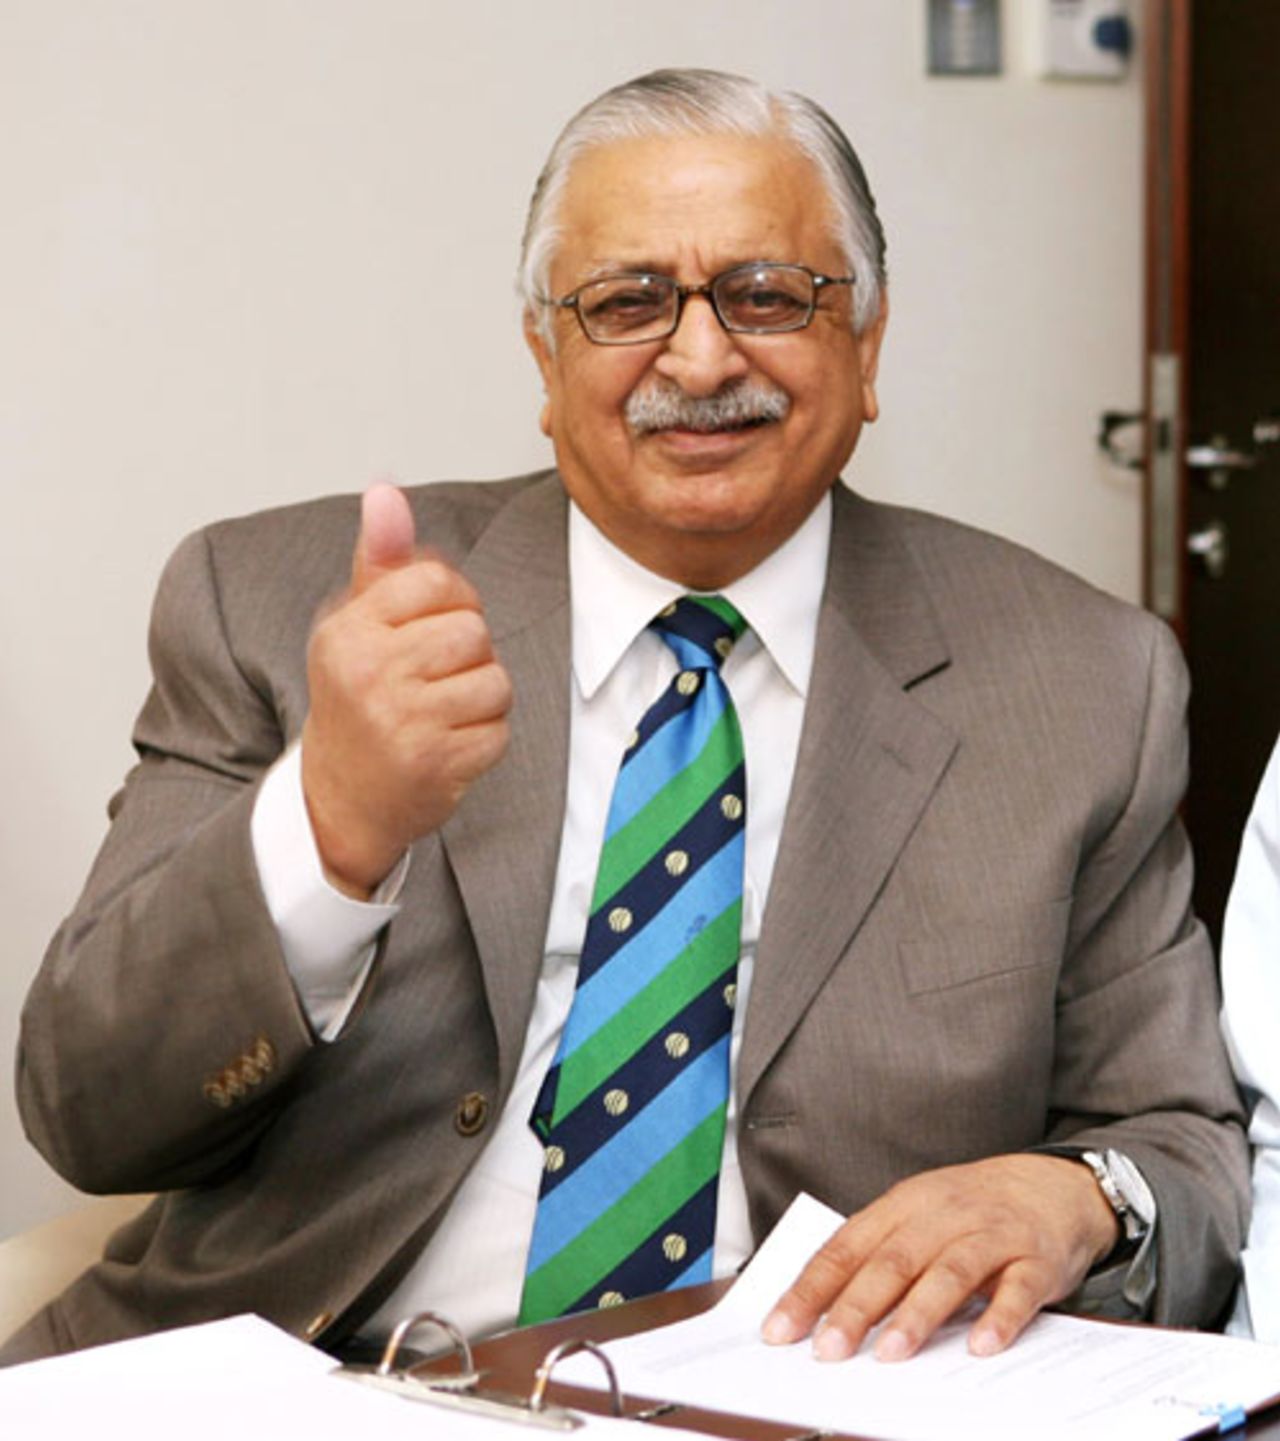 Ijaz Butt, the Pakistan board chairman, at the ICC executive meeting, Dubai, April 18, 2009